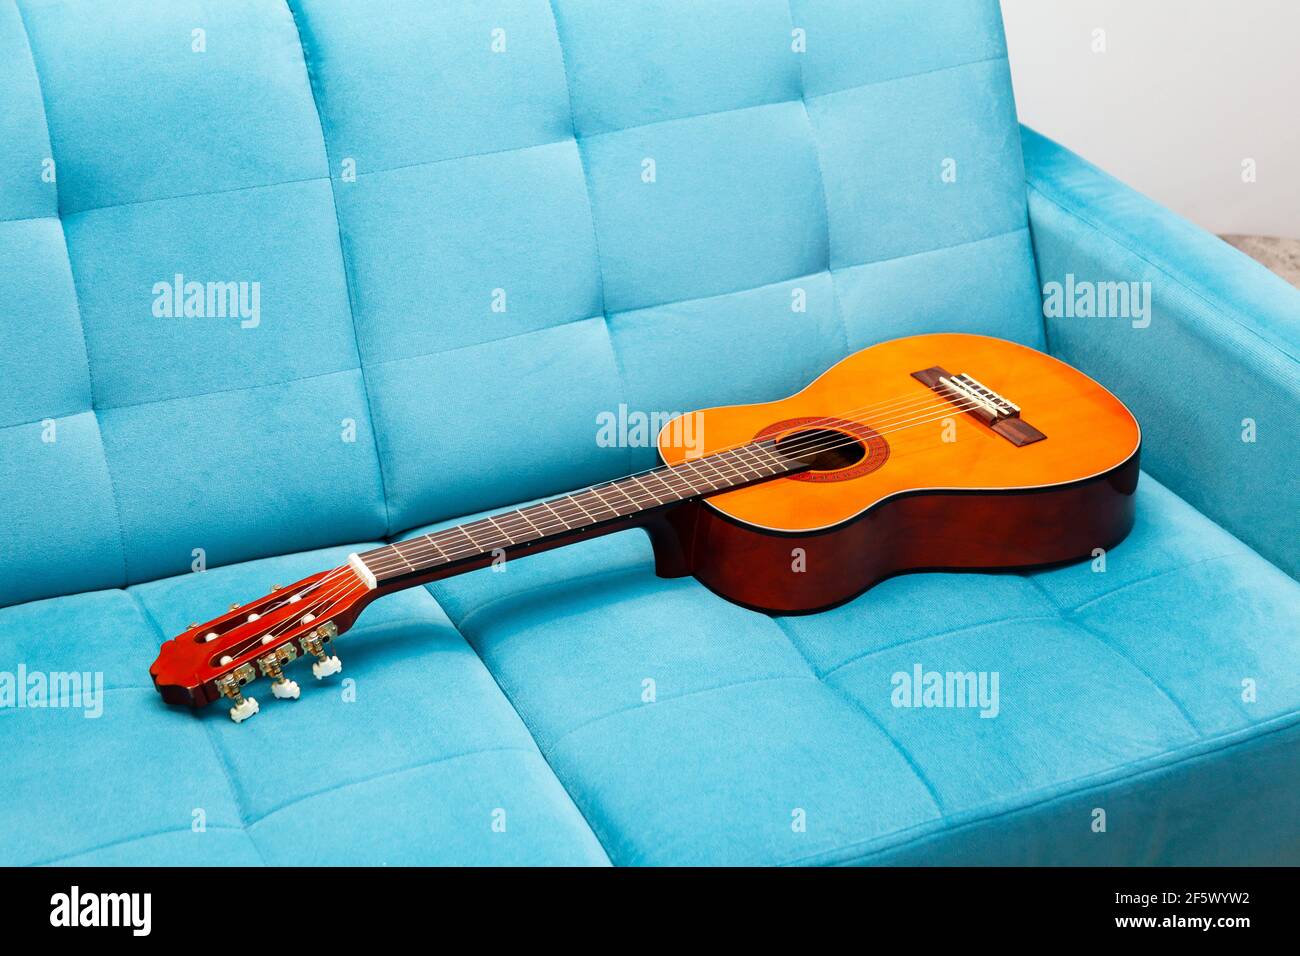 Guitare classique posée sur un canapé bleu, laissée derrière, personne  autour, gros plan. Pratiquer un instrument de musique, apprendre à jouer de  la guitare, rester à la maison Photo Stock - Alamy